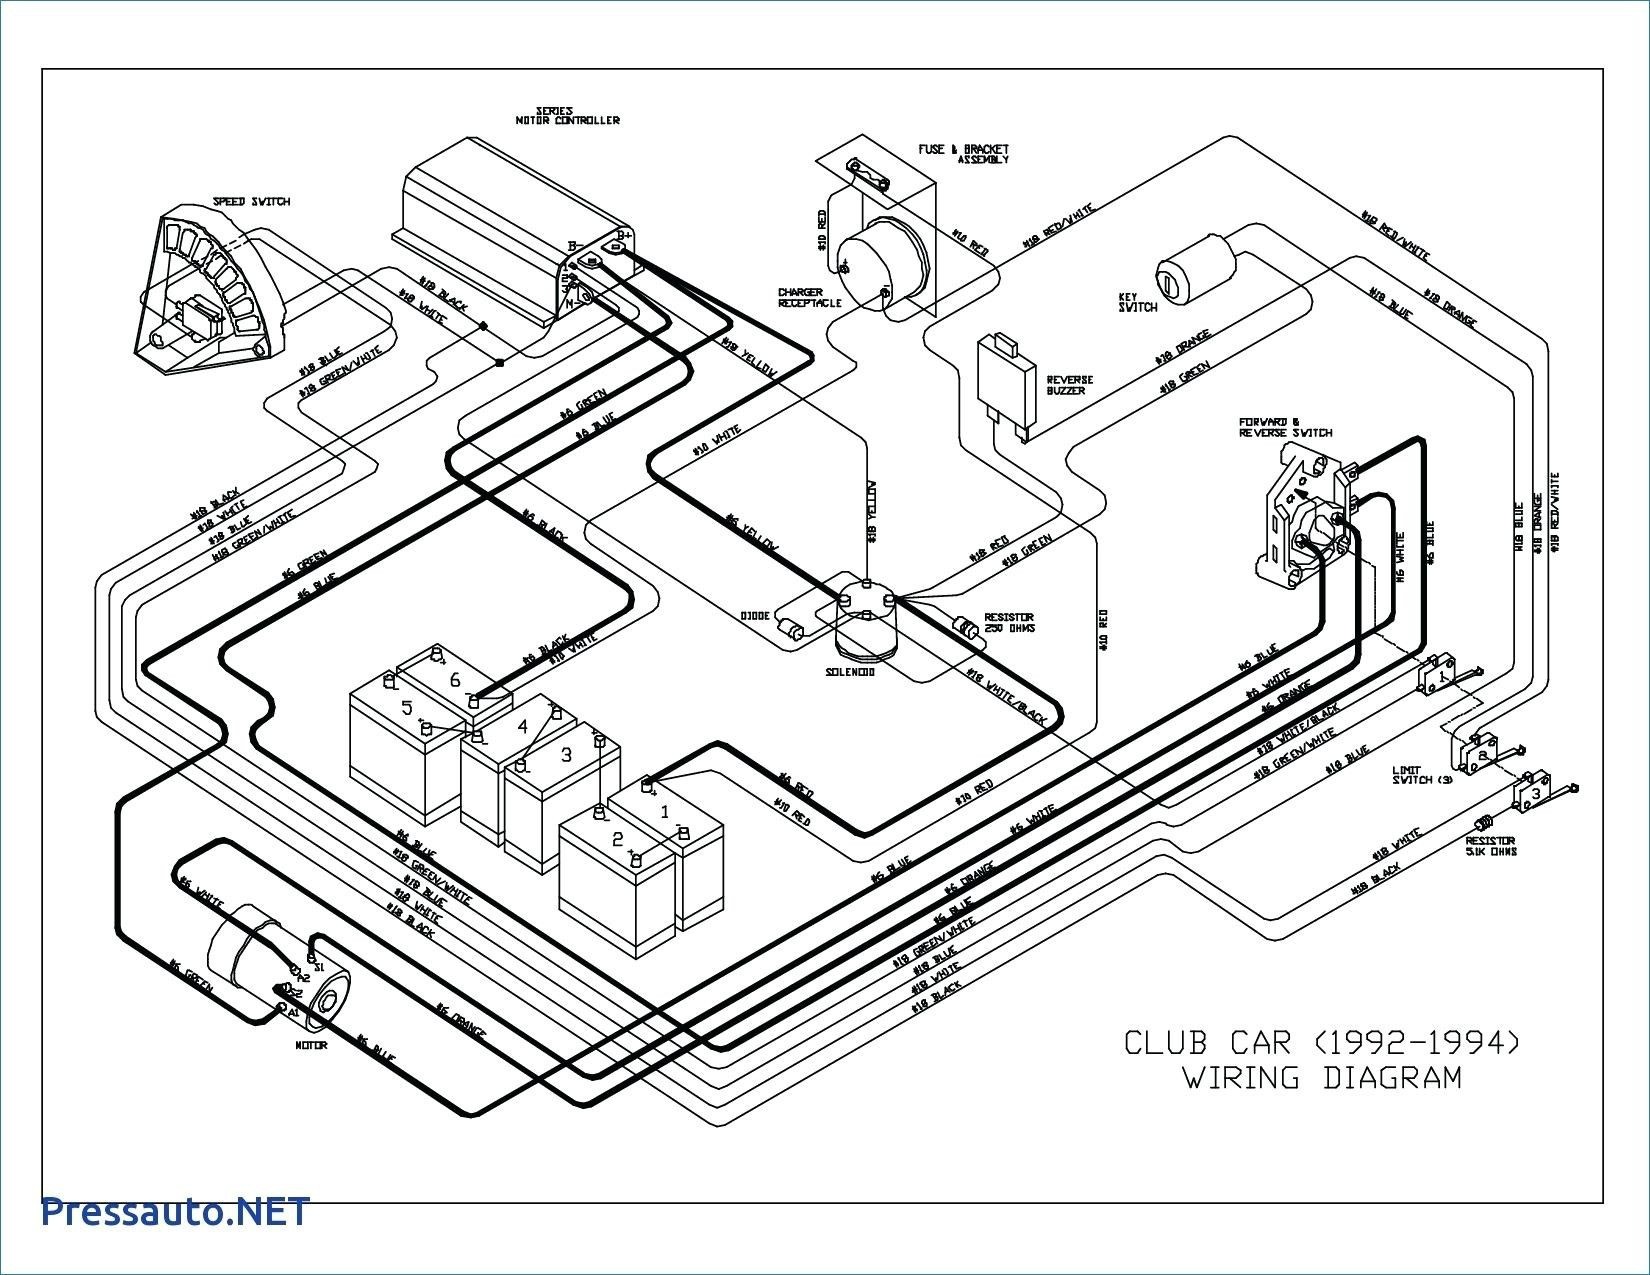 gem 36 volt wiring diagram wiring schematics diagram yamaha g9 golf cart wiring diagram gem 36